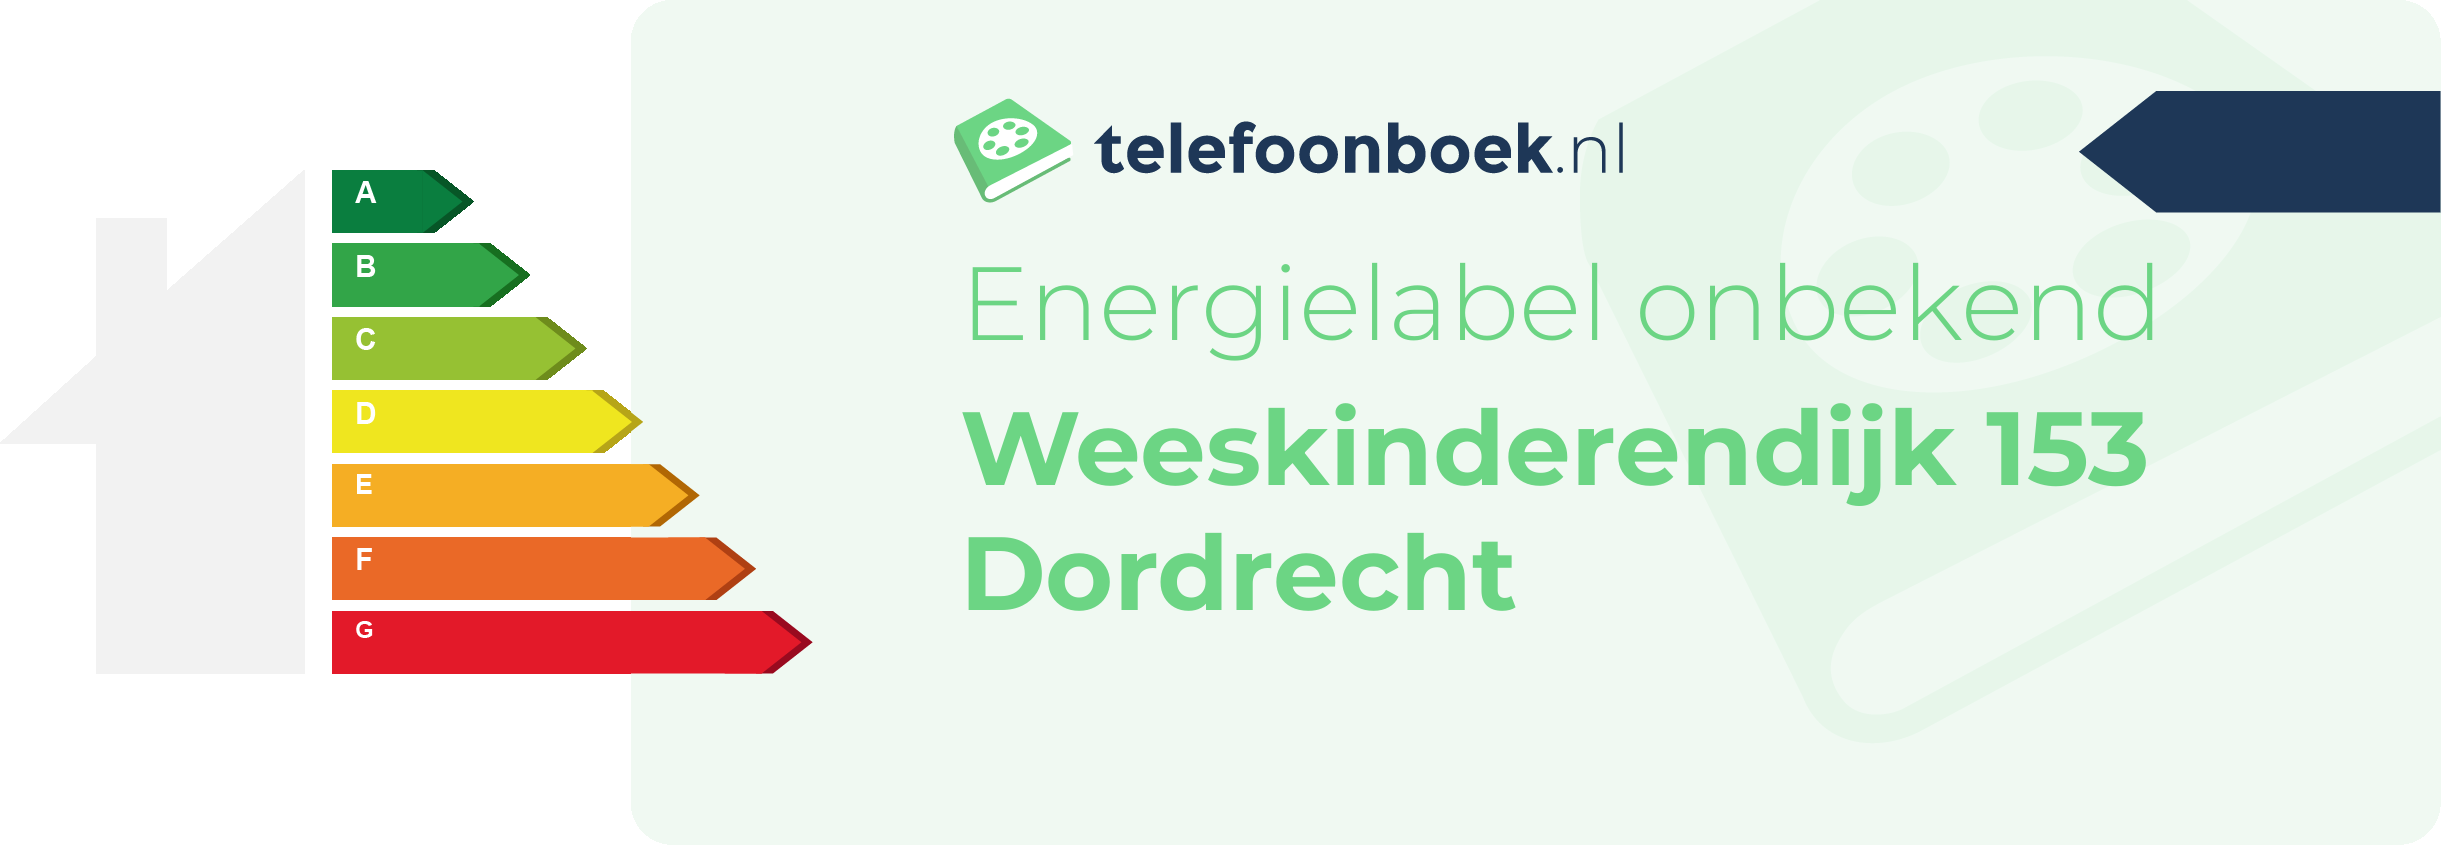 Energielabel Weeskinderendijk 153 Dordrecht